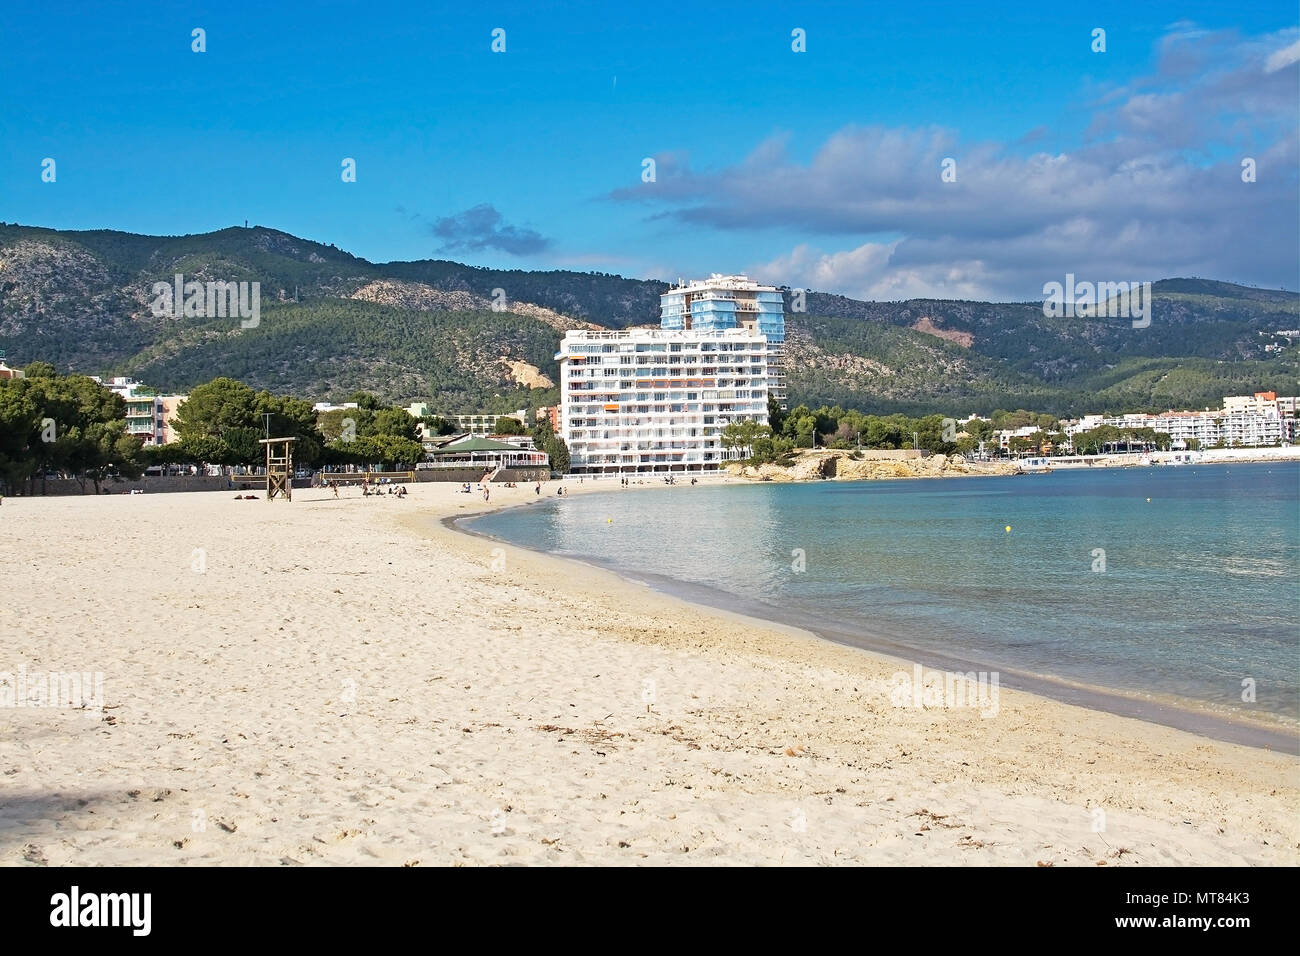 PALMA DI MALLORCA, Spagna - 17 febbraio 2018: spiaggia di Palma Nova, hotel e montagne su un nuvoloso giorno di febbraio 17, 2018 in Palma di Mallorca, Spagna. Foto Stock